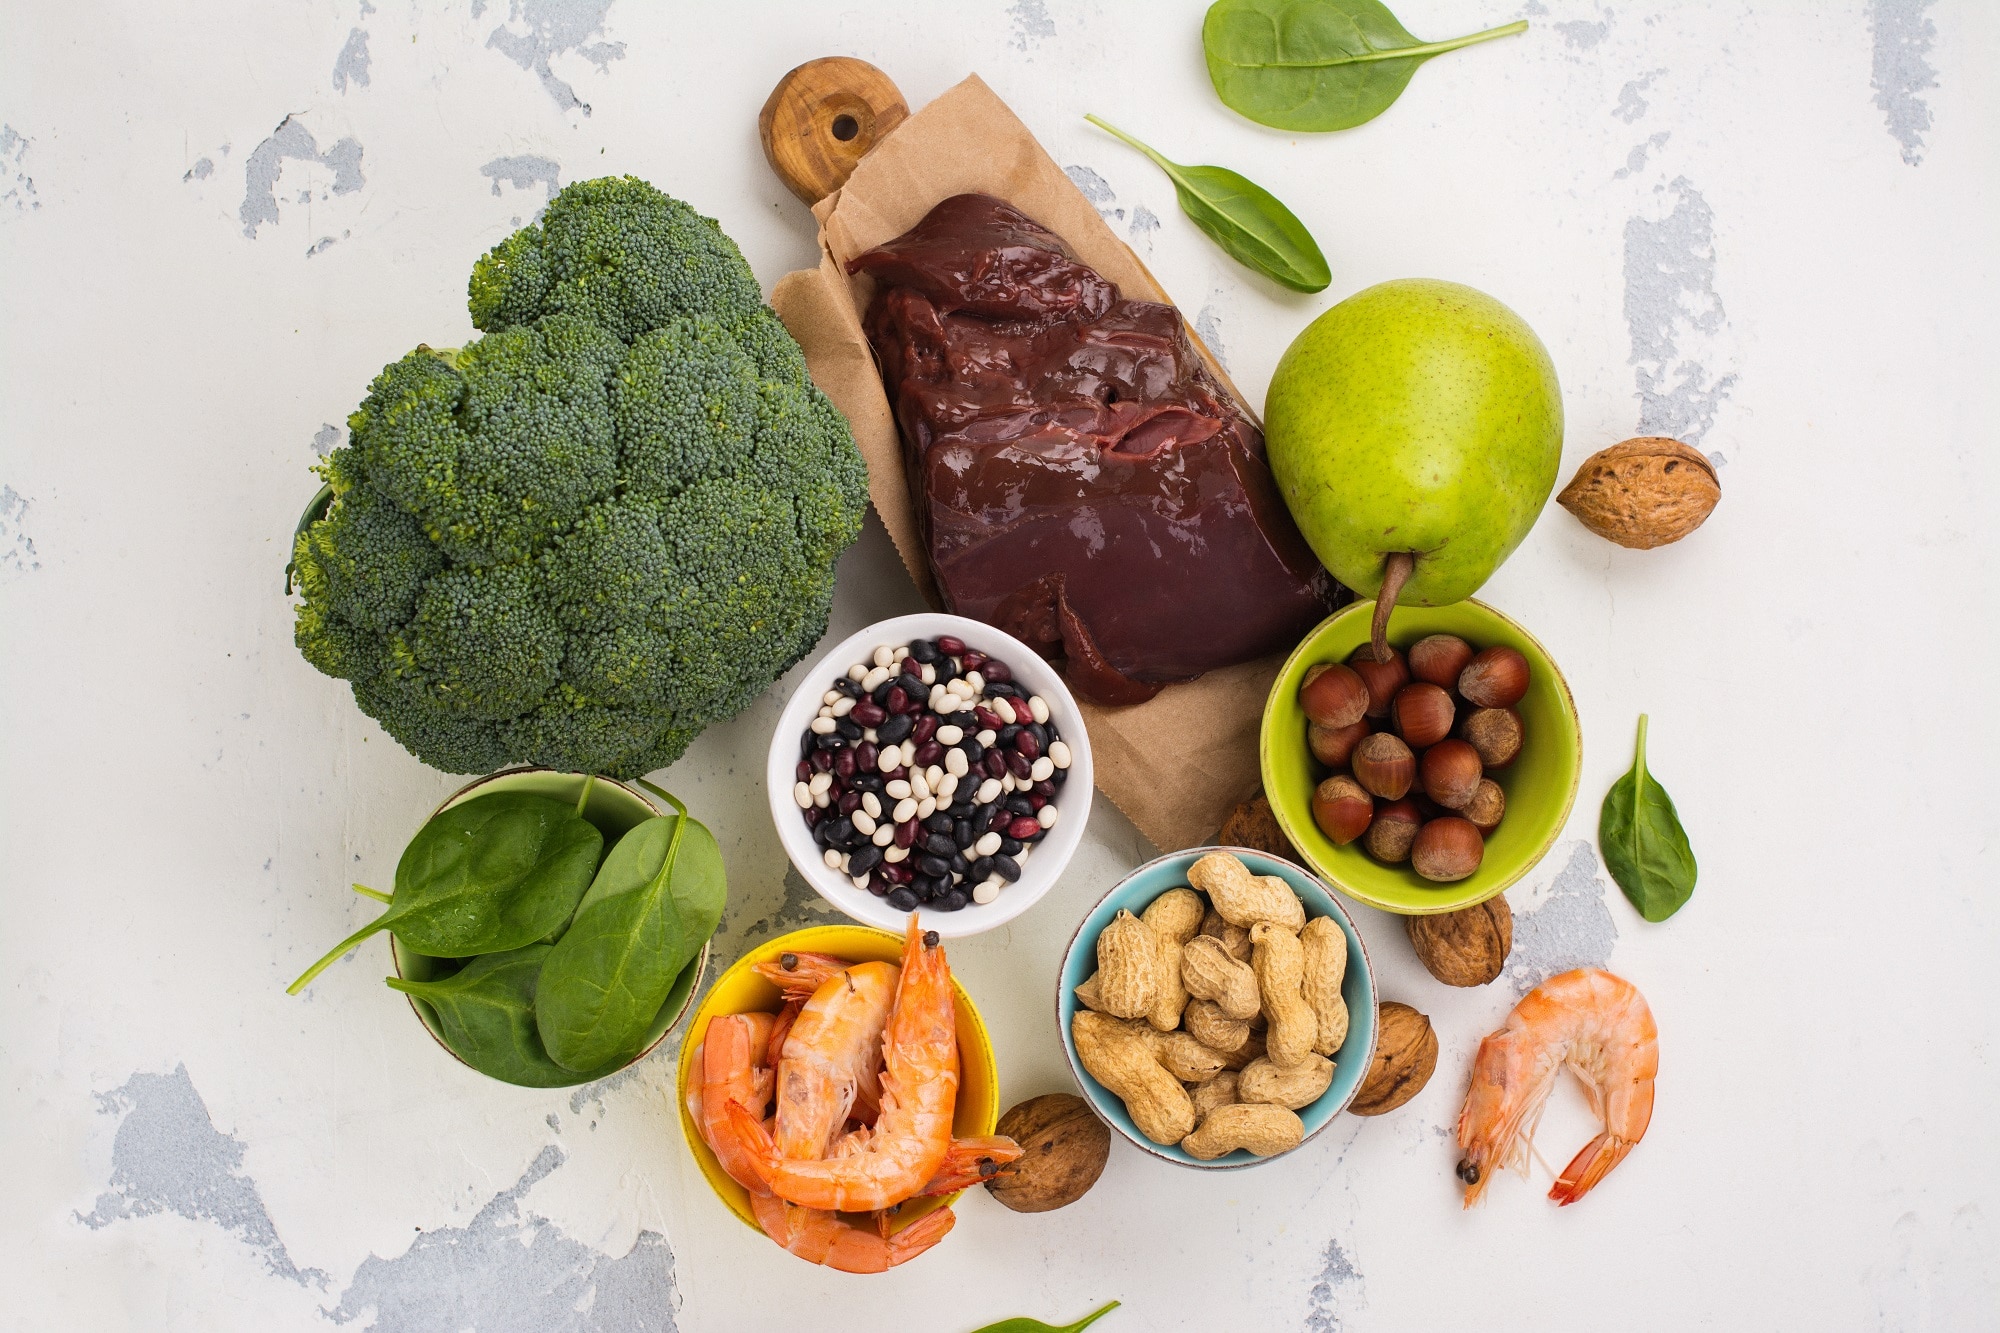 Divers aliments sains, notamment des fruits, des légumes, des noix, des crevettes et du foie riches en vitamine B9 sur une surface légère.